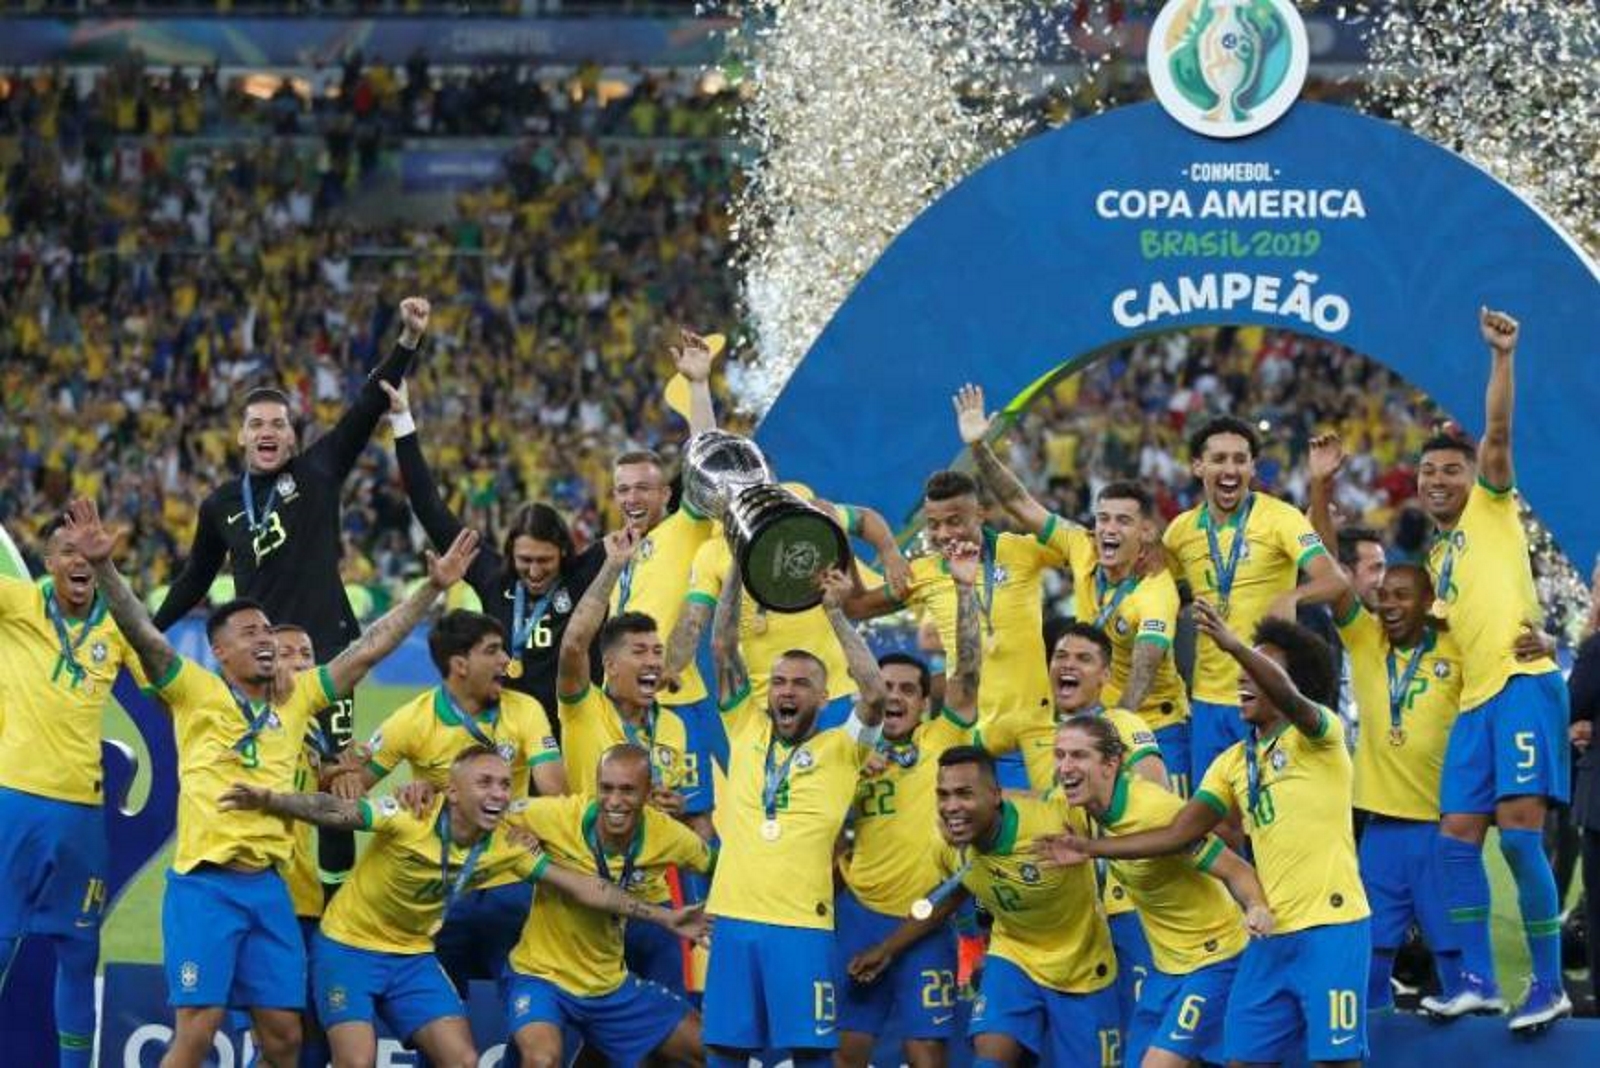 Бразилия сколько раз чемпионом по футболу. Сборная Бразилии Кубок Америки 2019. Бразилия сборная по футболу с Кубком.